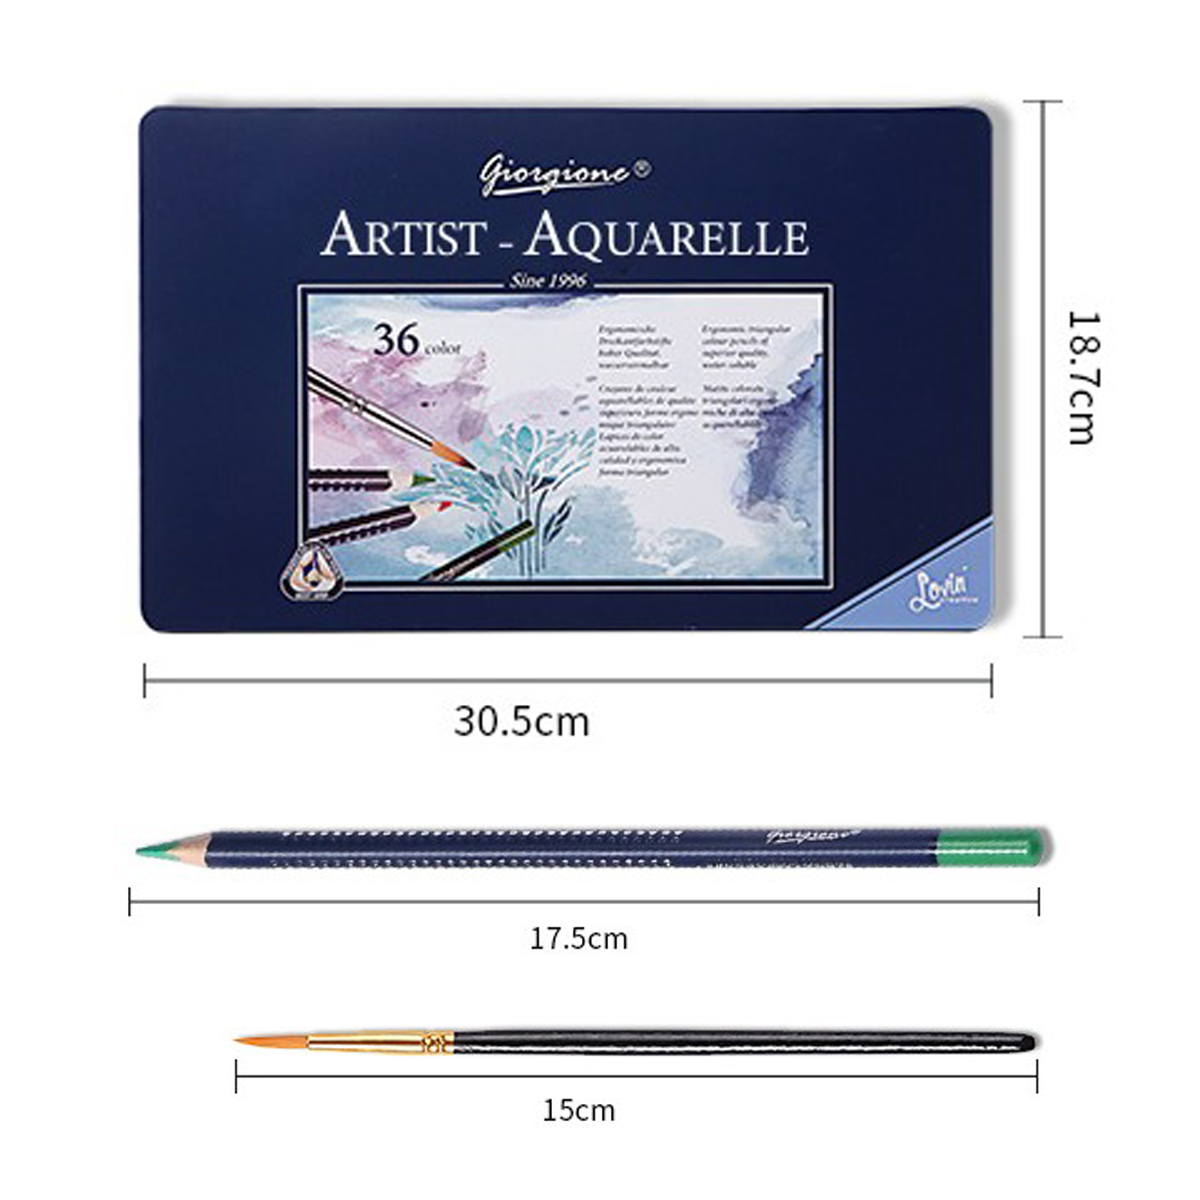 水彩色鉛筆 36色セット ネコポス送料無料 水彩 色鉛筆 色えんぴつ いろ 